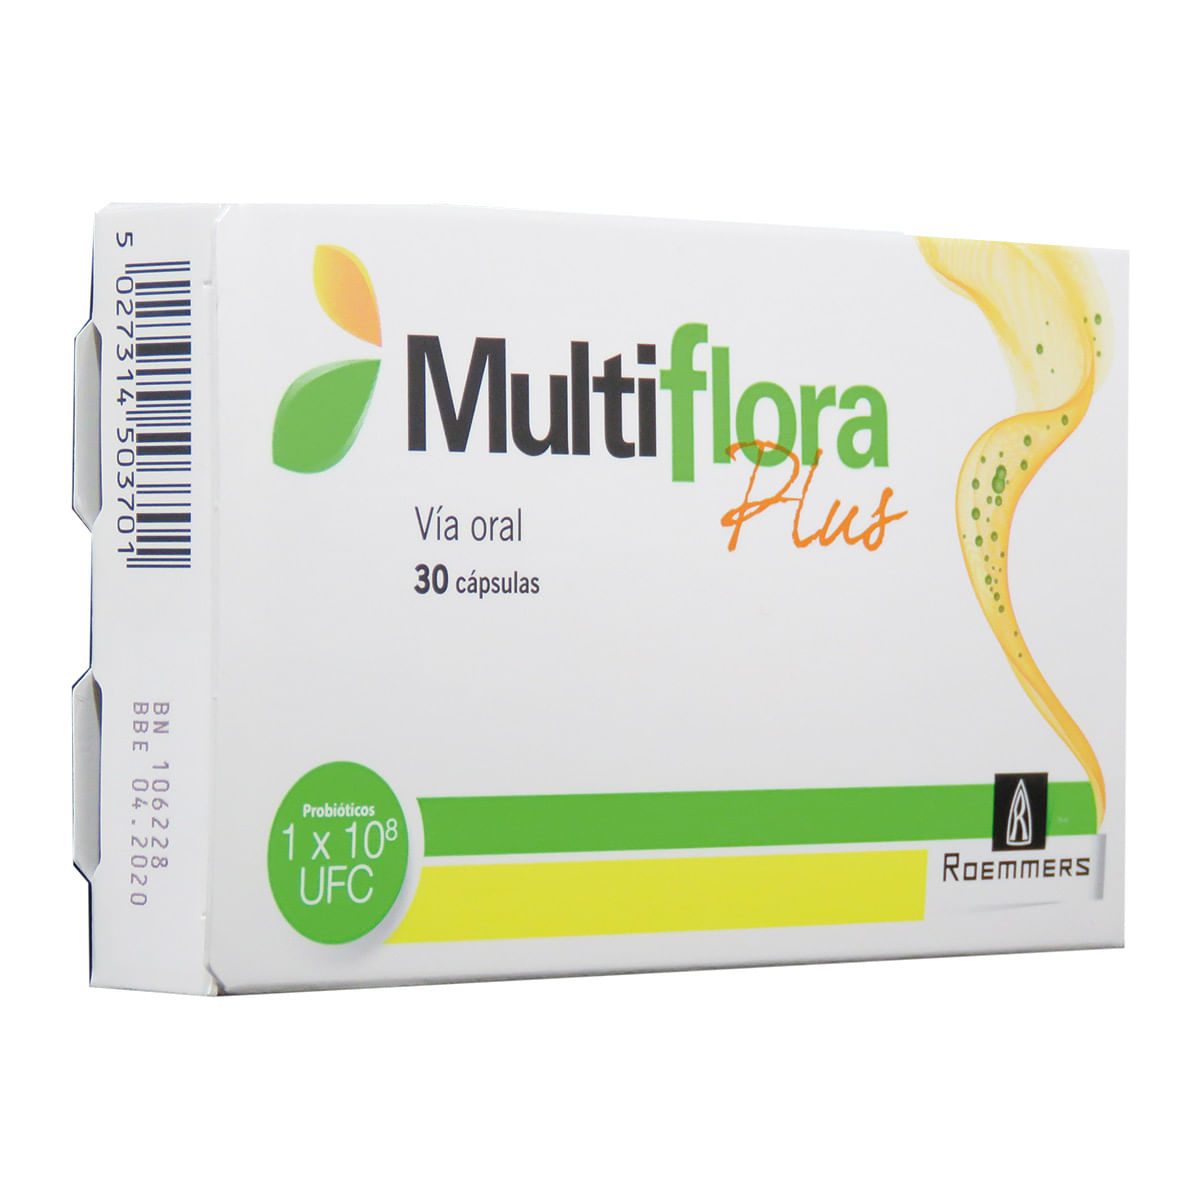 Multiflora Plus Cápsula